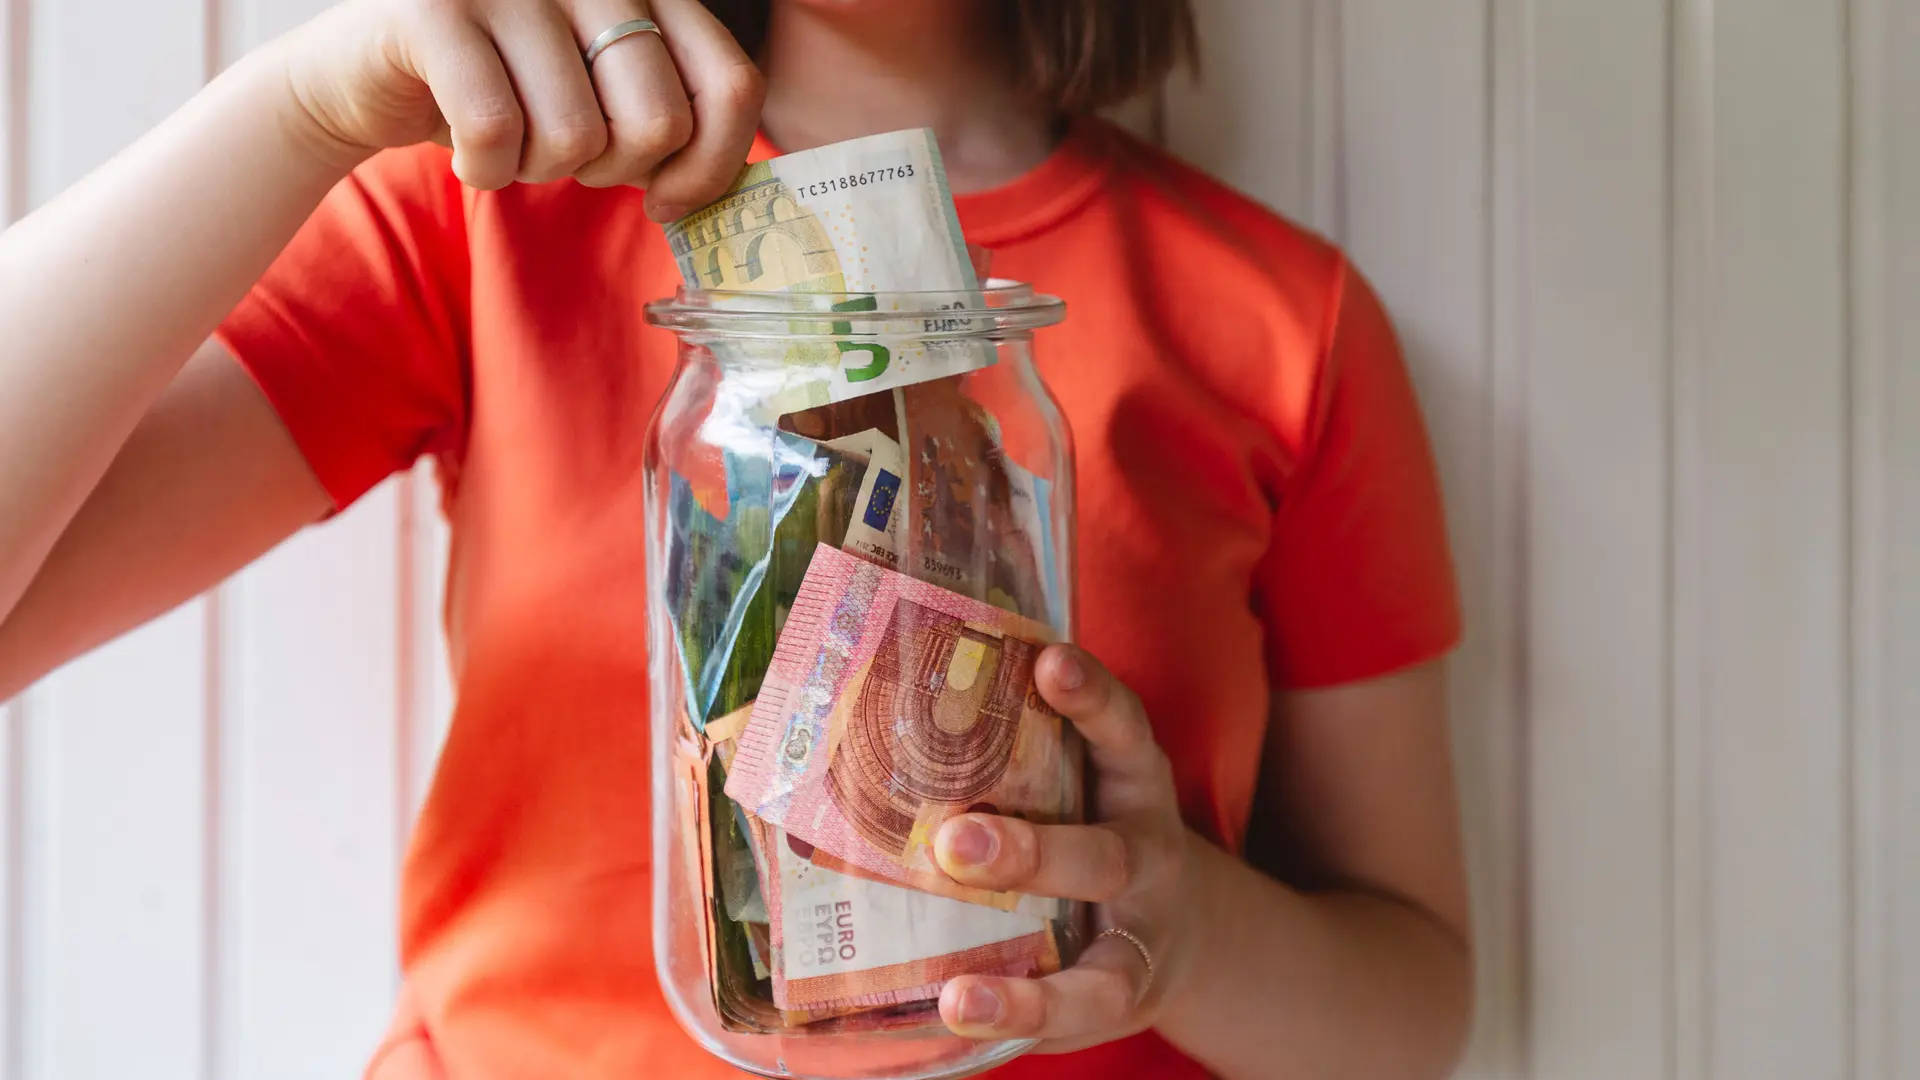 Oberkörper einer jungen Frau mit einem Glas voller Geld vor sich. mit einer Hand steckt sie Geld ins Glas.